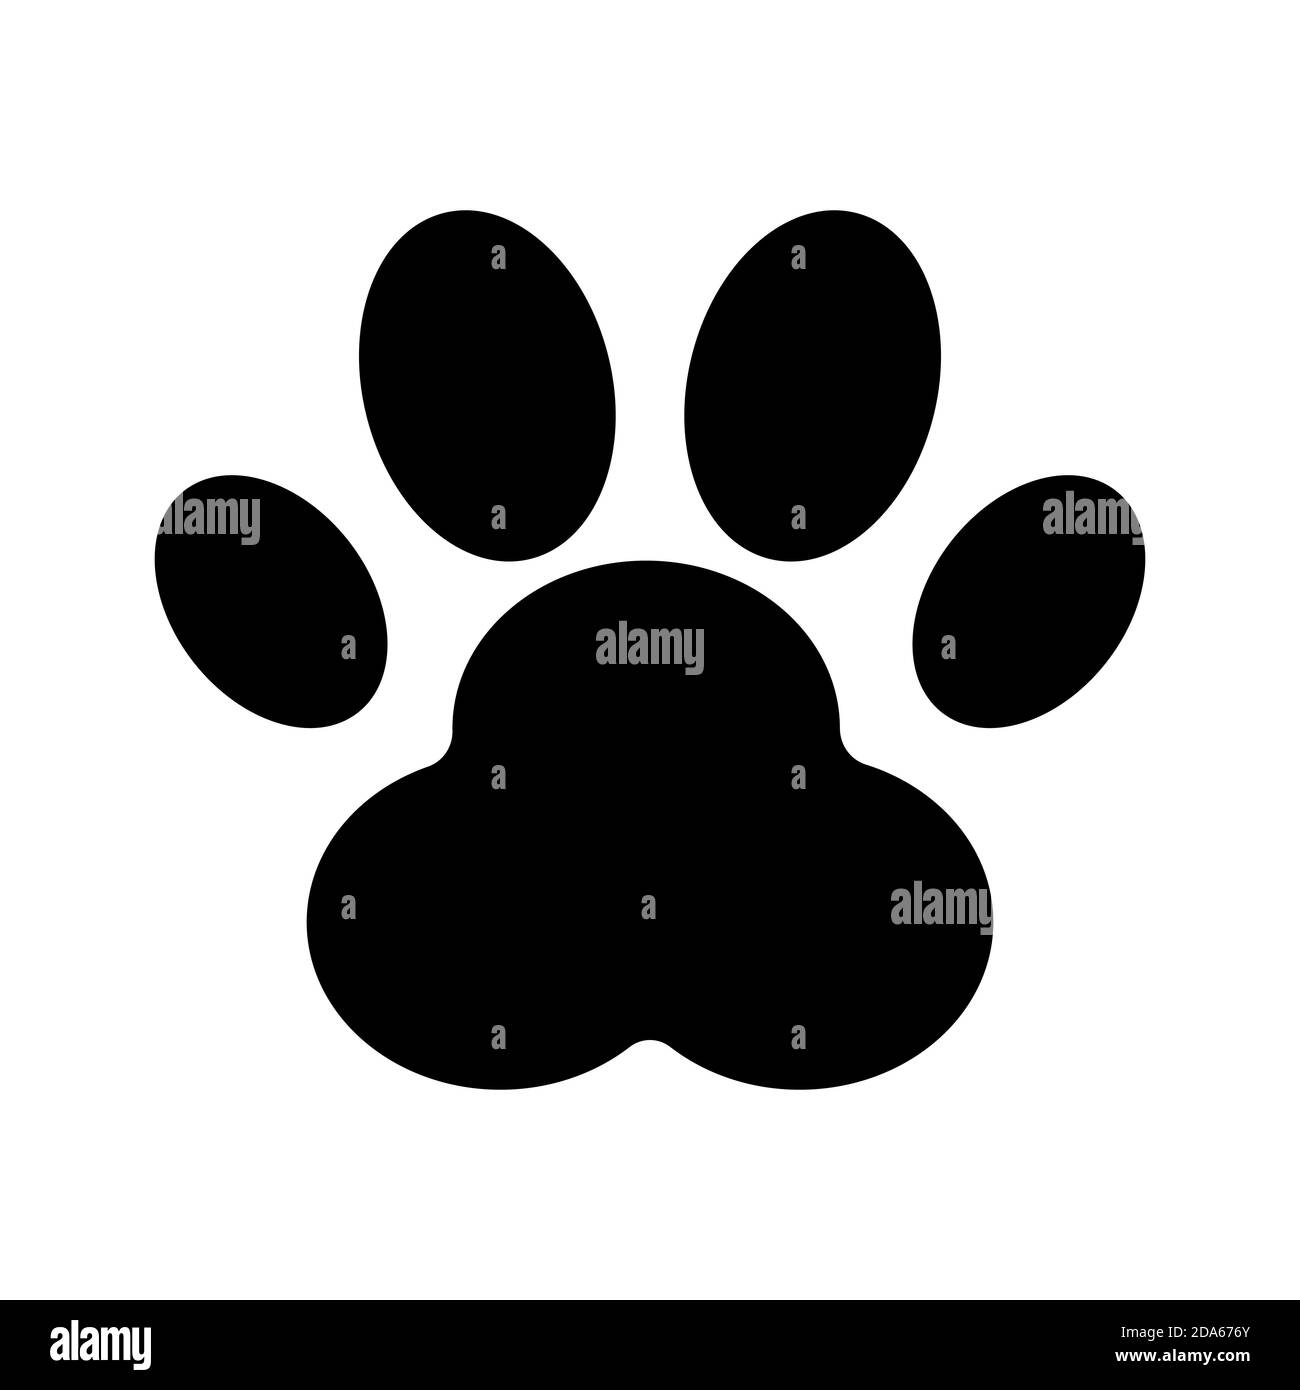 Illustrazione del vettore di zampa del cane o del gatto. EPS 10 Illustrazione Vettoriale